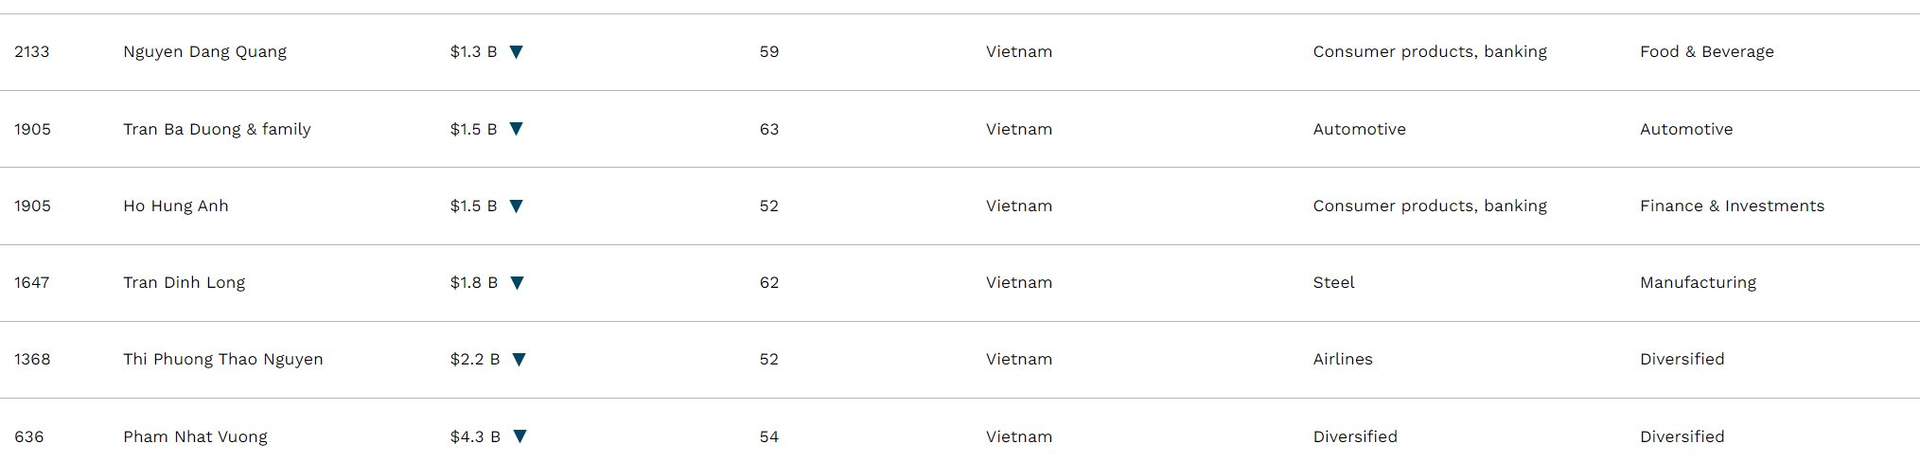 Forbes công bố tỷ phú đôla năm 2023: Chủ tịch Novaland Bùi Thành Nhơn bị loại khỏi danh sách, ảnh bìa xuất hiện 1 người gốc Việt - Ảnh 2.